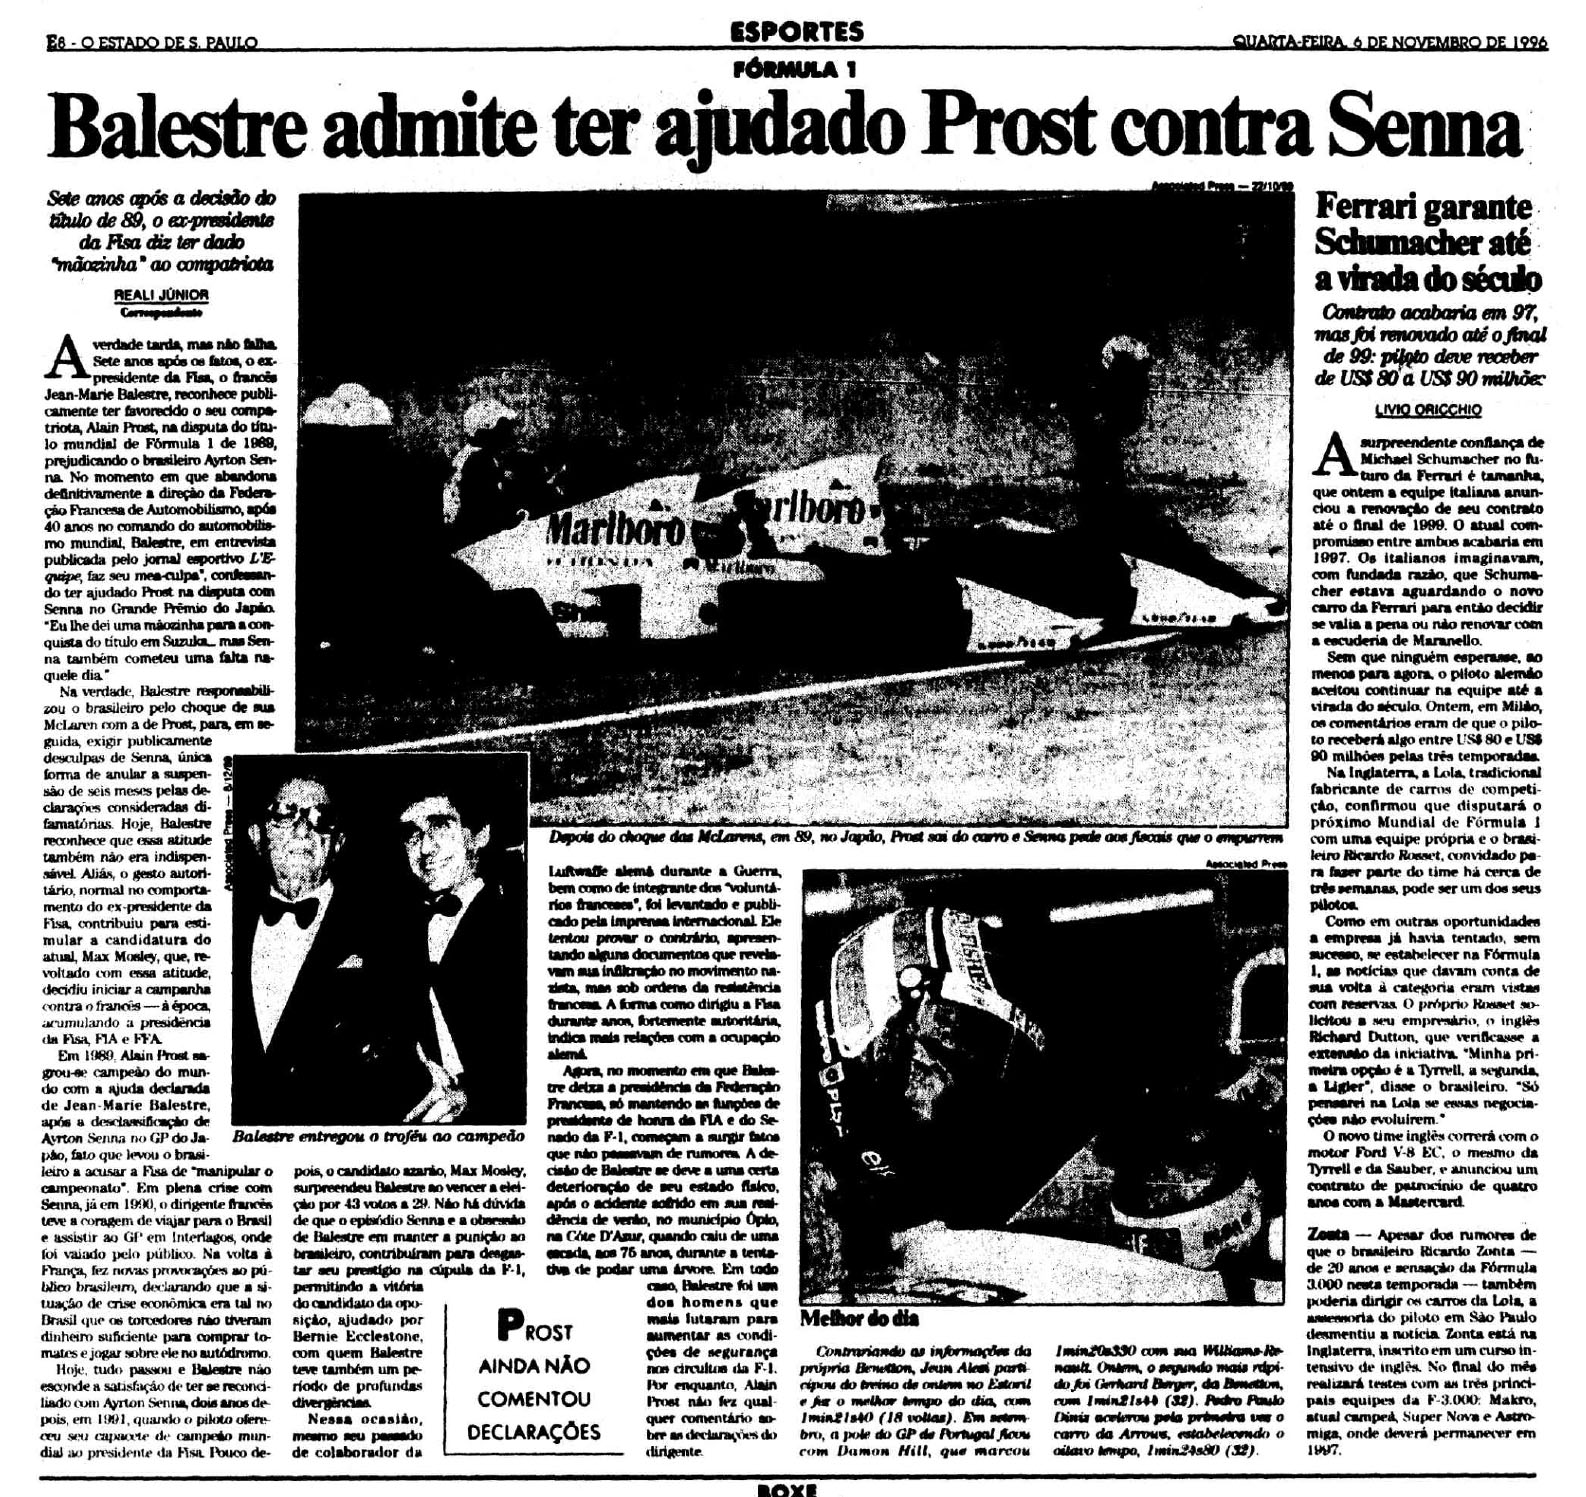 Repercussão de entrevista de Balestre em 1996 sobre a decisão entre Senna e Prost de 1989